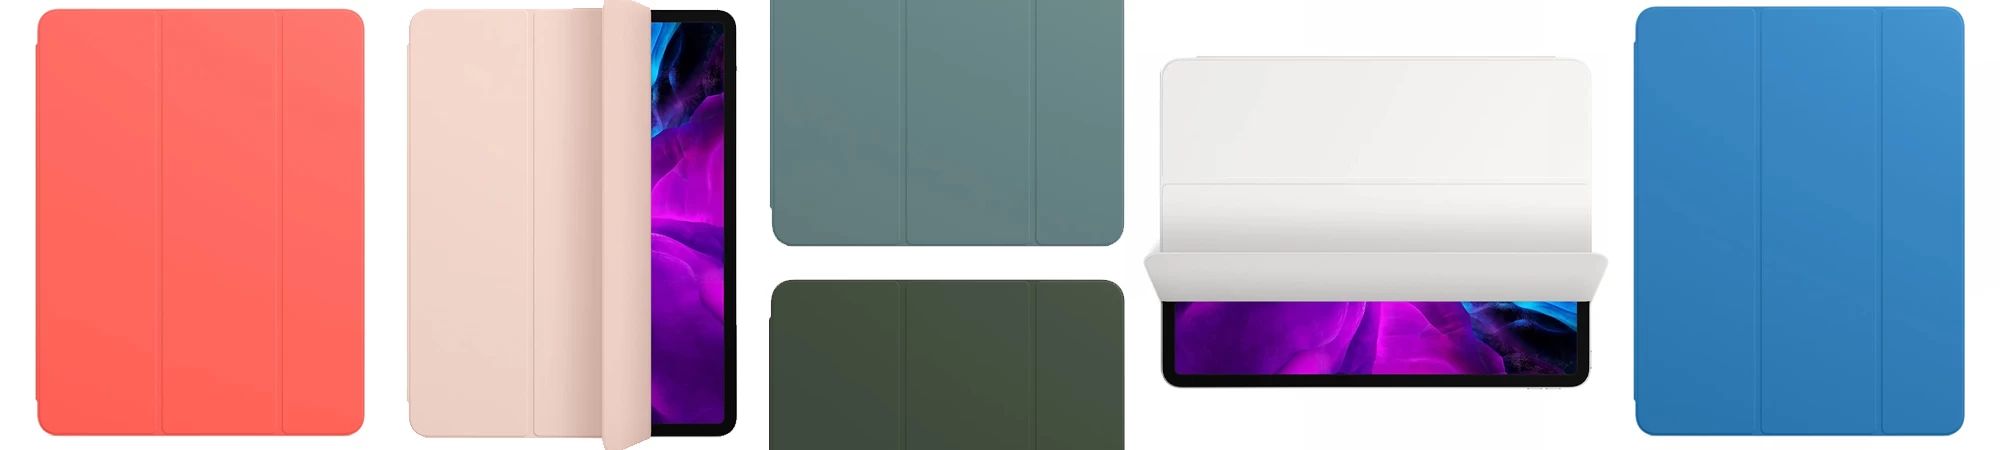 Чехол Upex Smart Series для iPad 2/3/4 Purple (UP56104) - 1